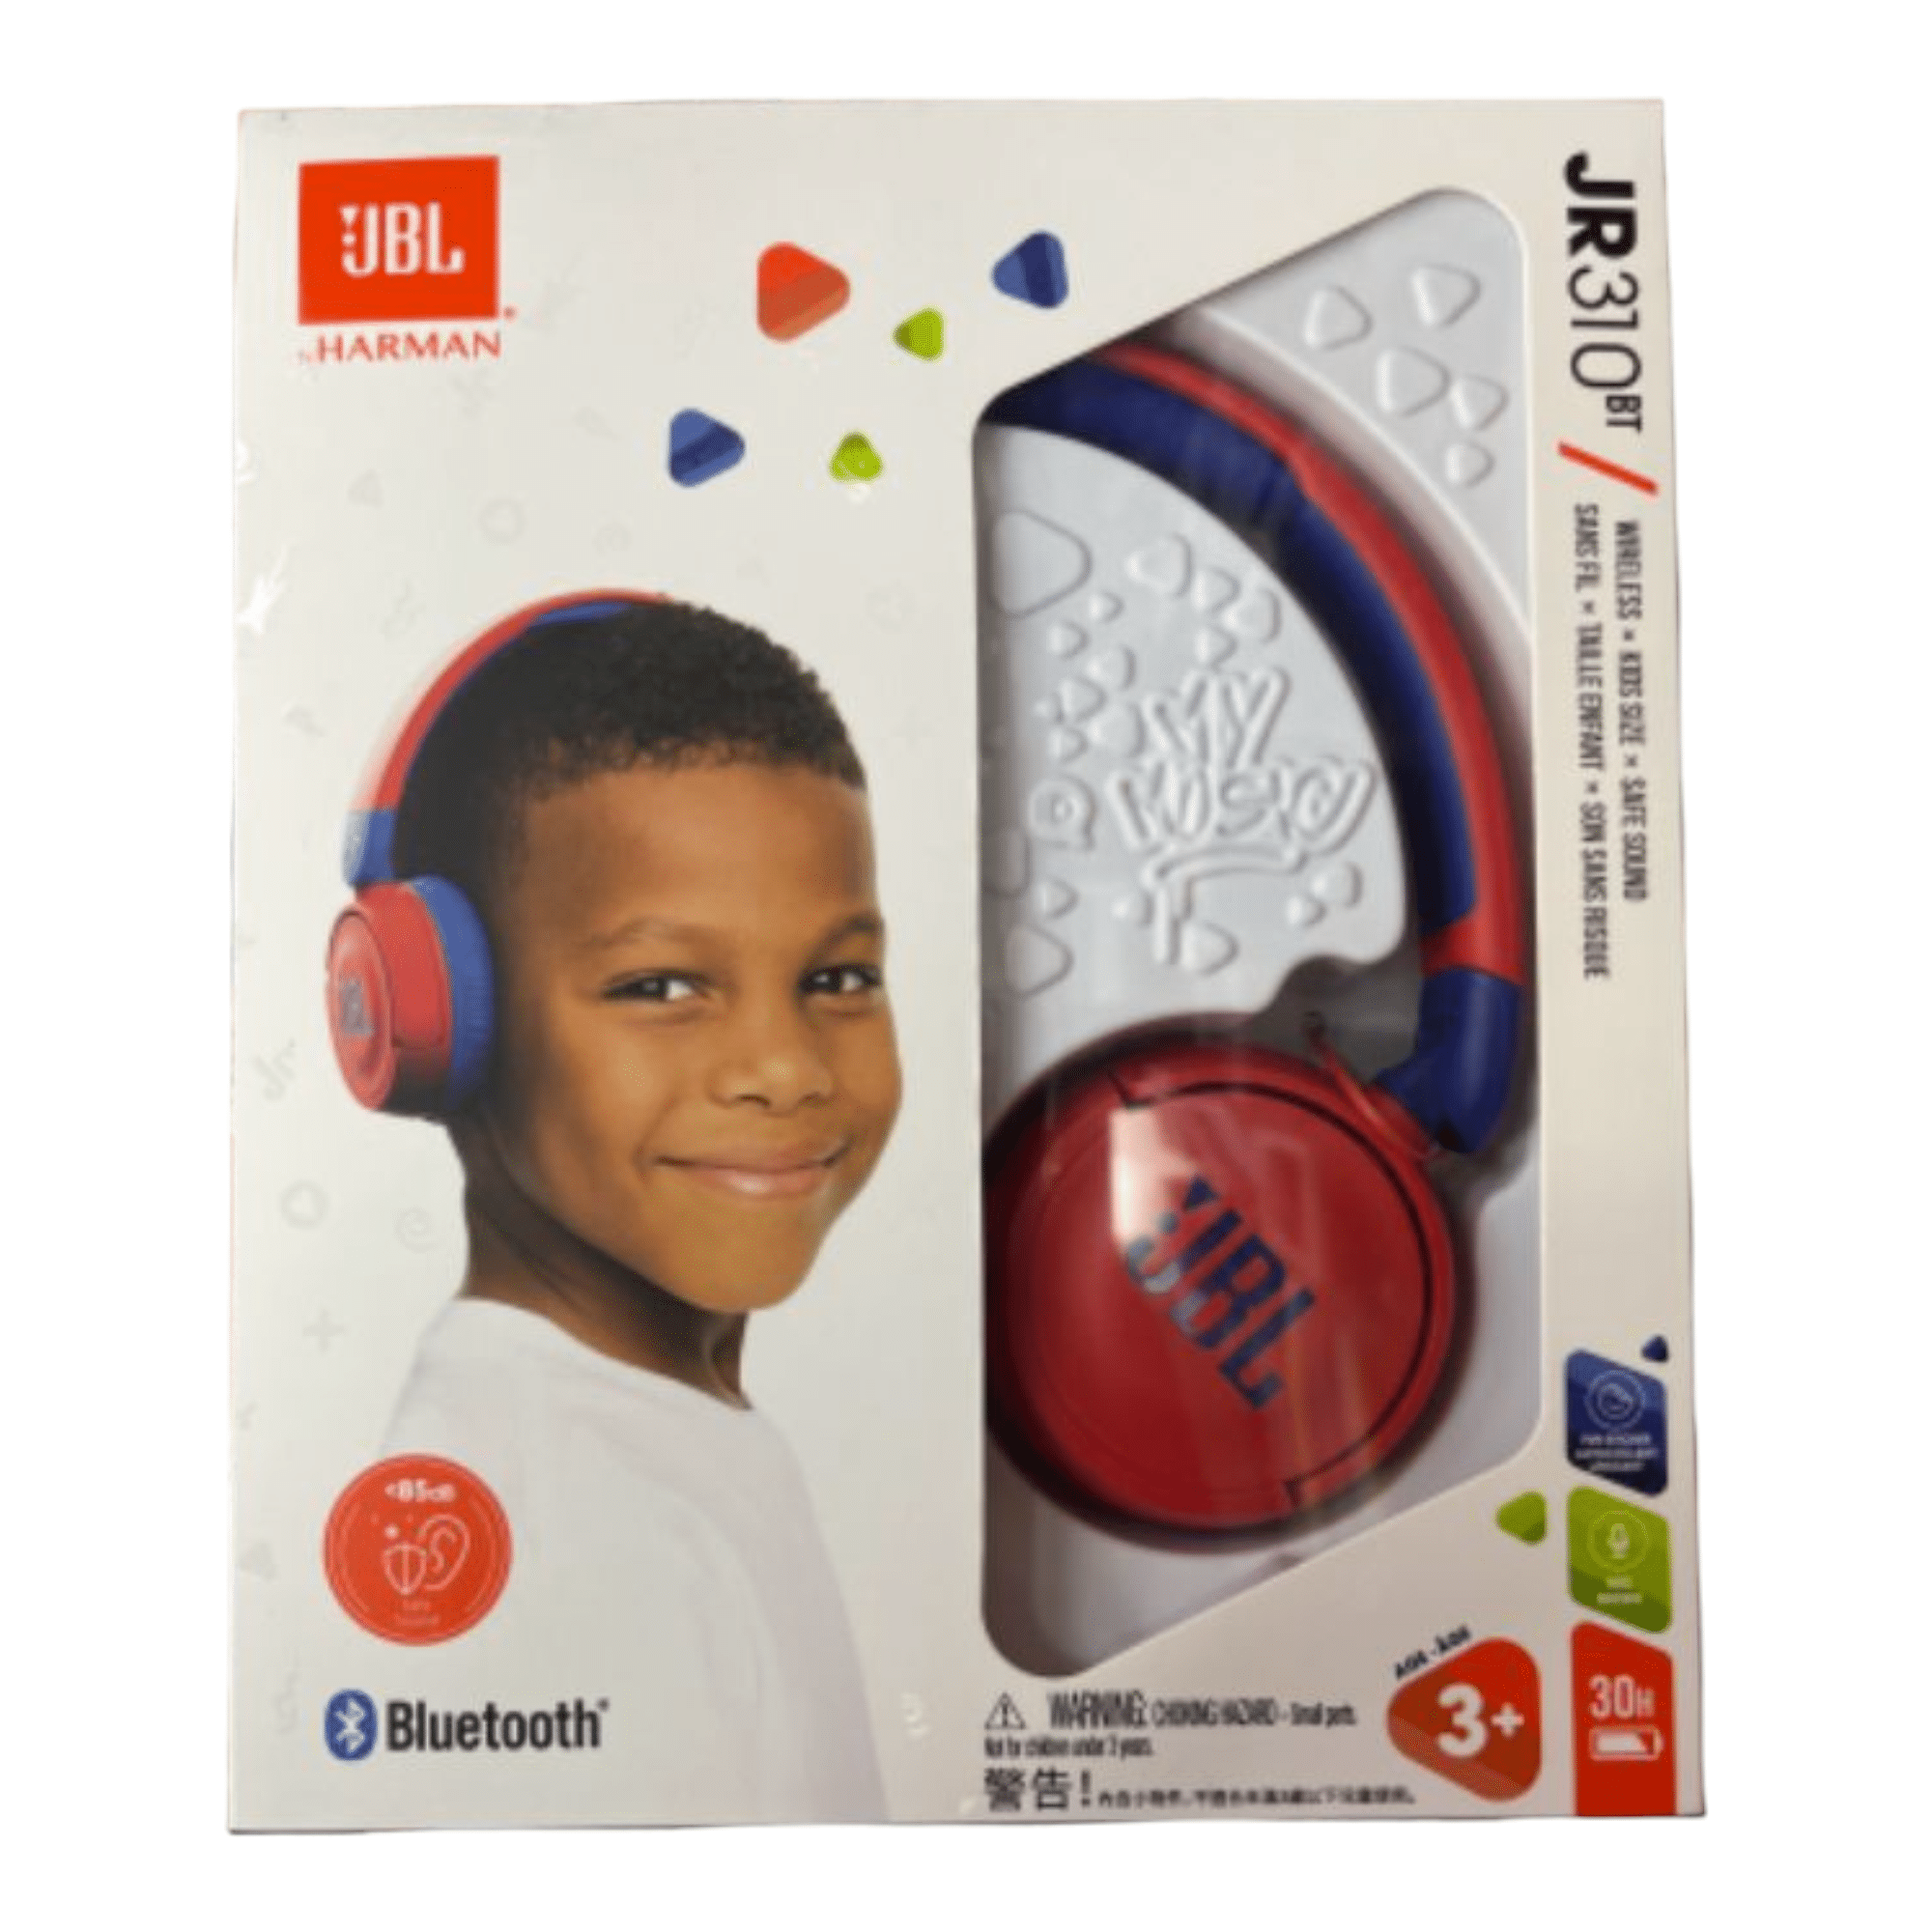 אוזניות קשת אלחוטיות לילדים JBL JR310BT אדום עם מיקרופון מובנה